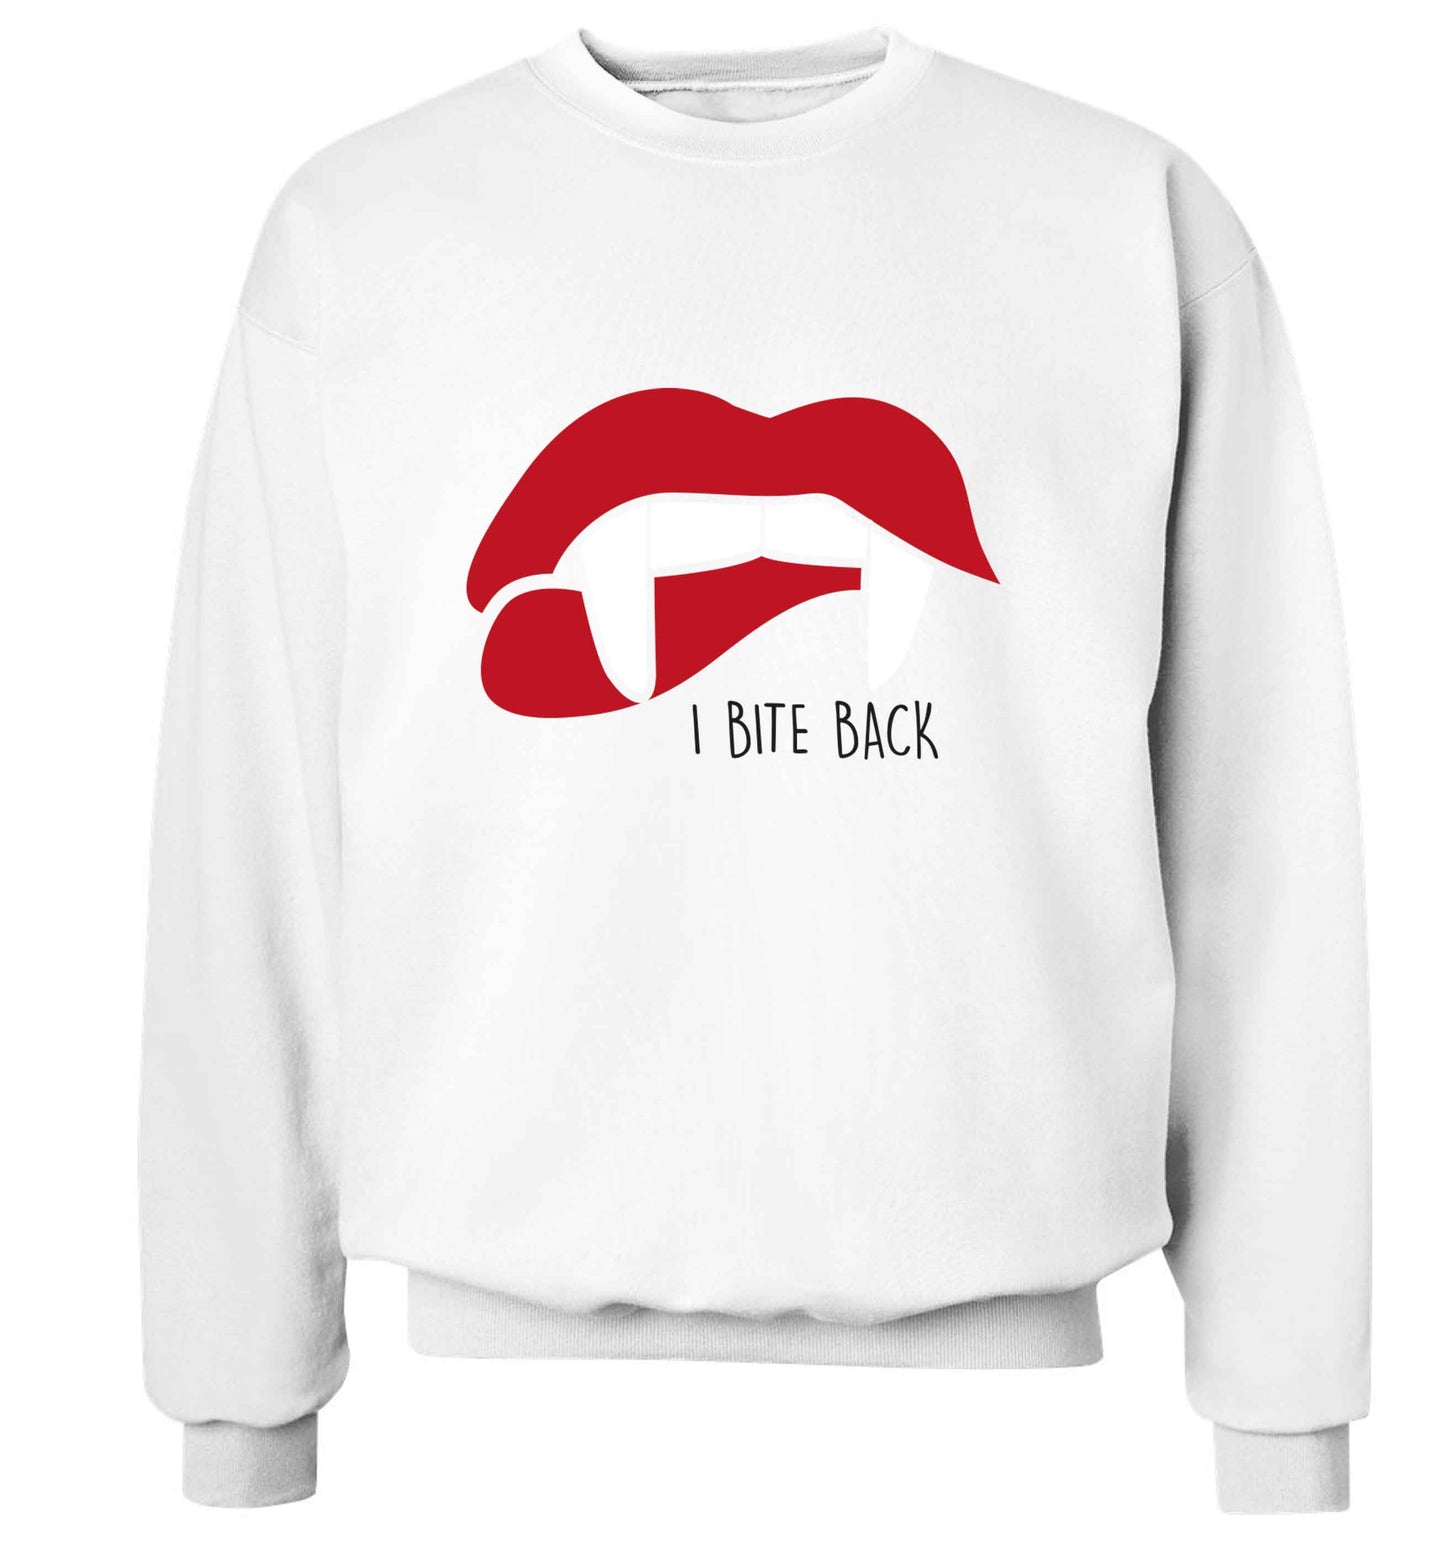 I bite back adult's unisex white sweater 2XL